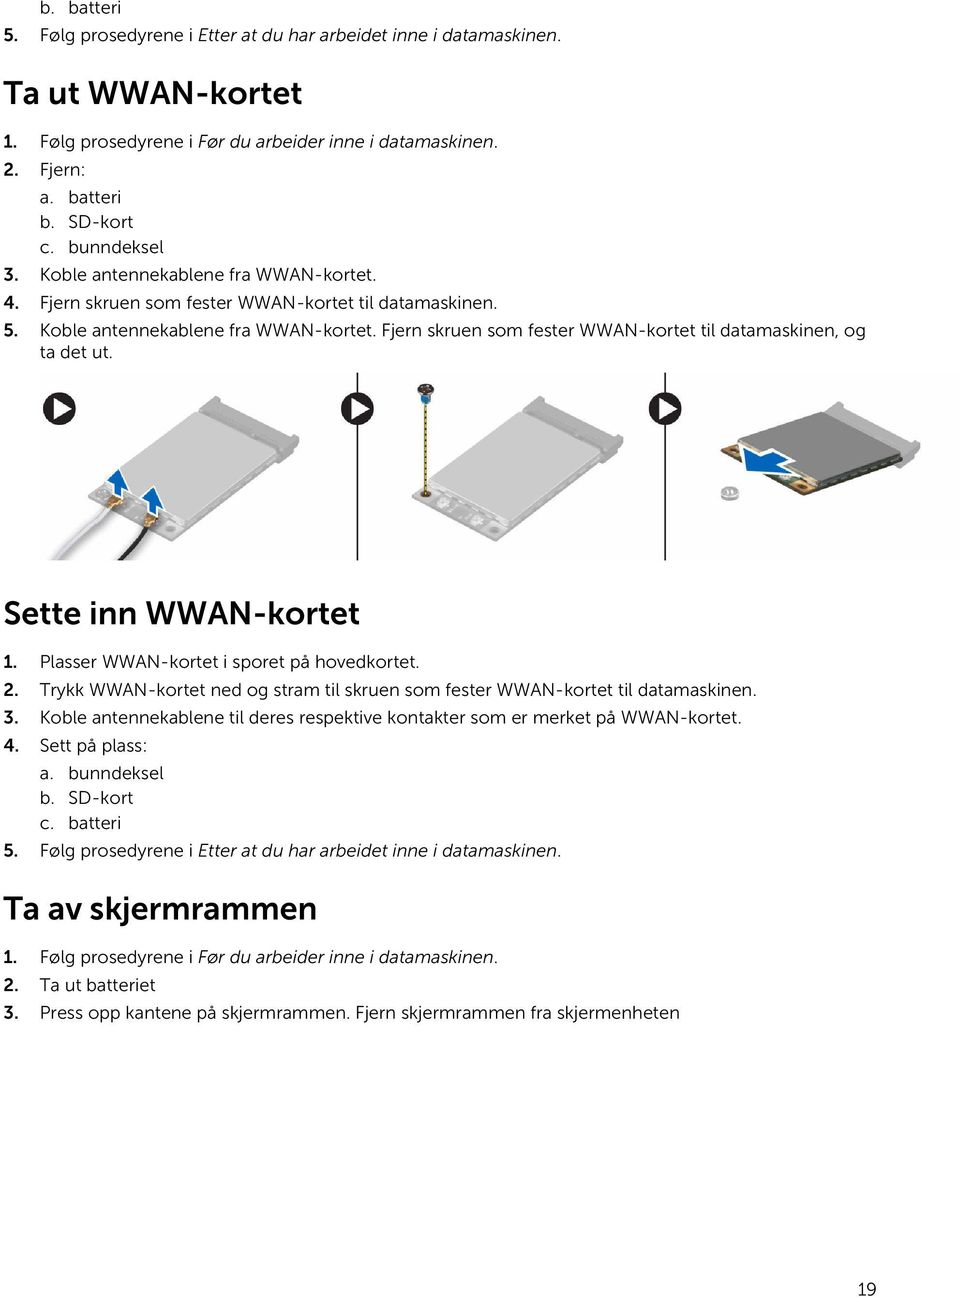 Sette inn WWAN-kortet 1. Plasser WWAN-kortet i sporet på hovedkortet. 2. Trykk WWAN-kortet ned og stram til skruen som fester WWAN-kortet til datamaskinen. 3.